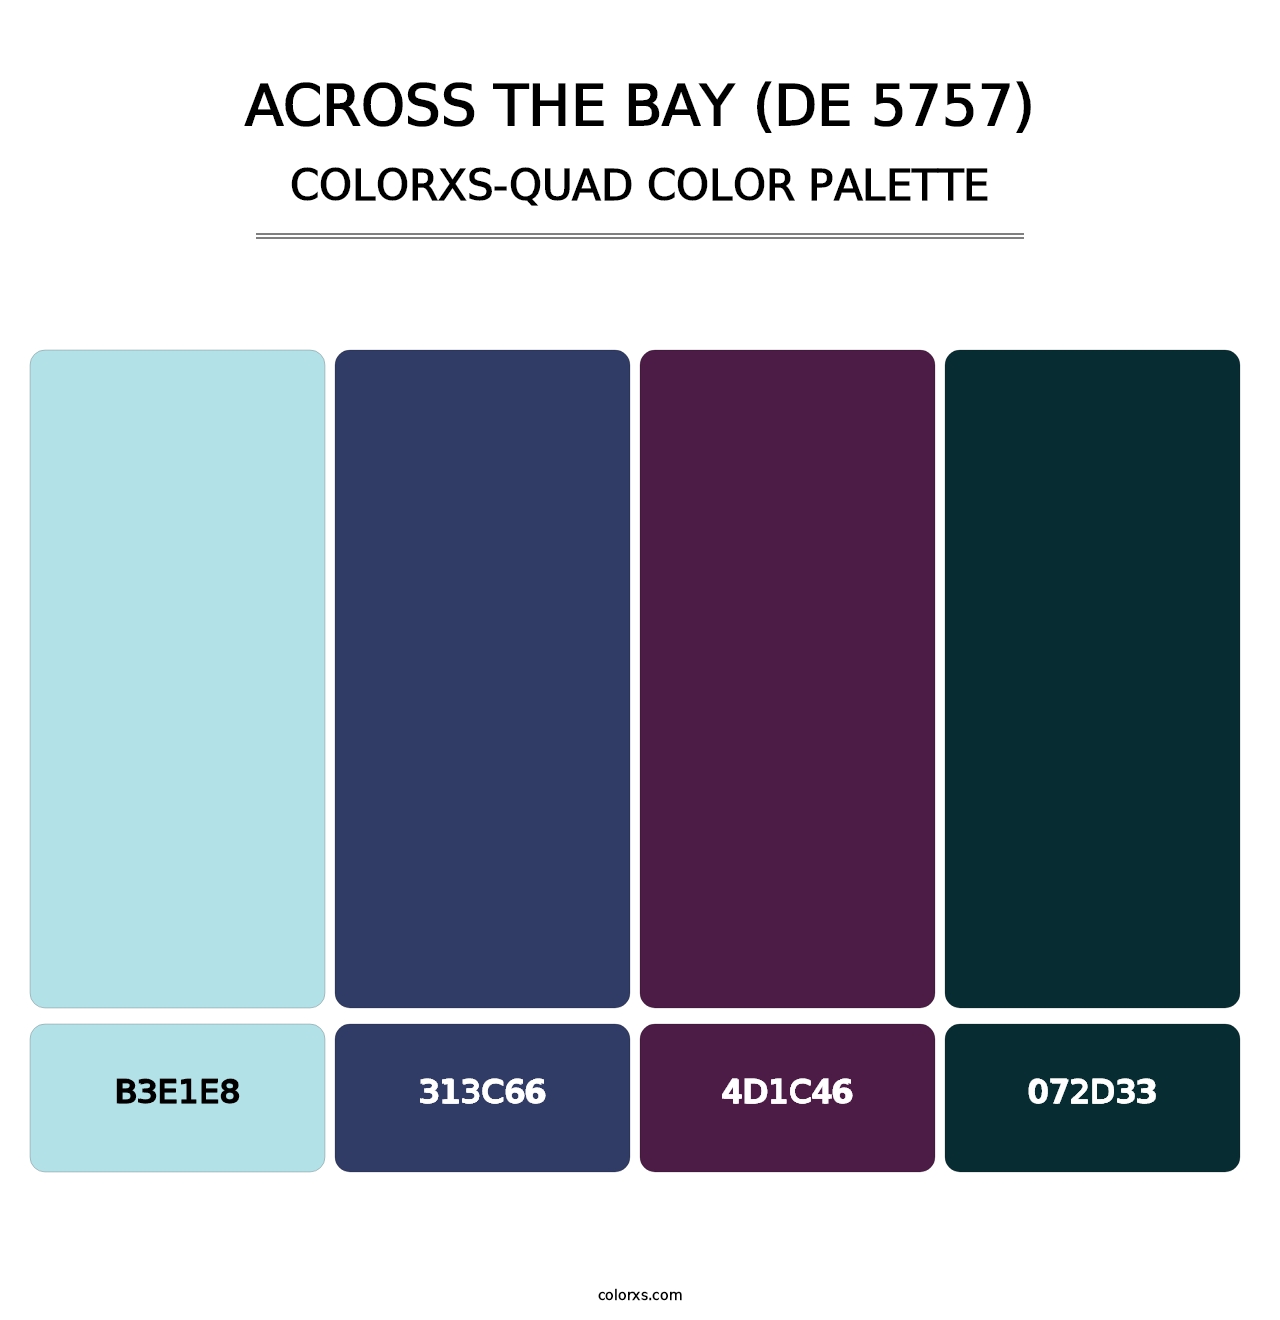 Across the Bay (DE 5757) - Colorxs Quad Palette